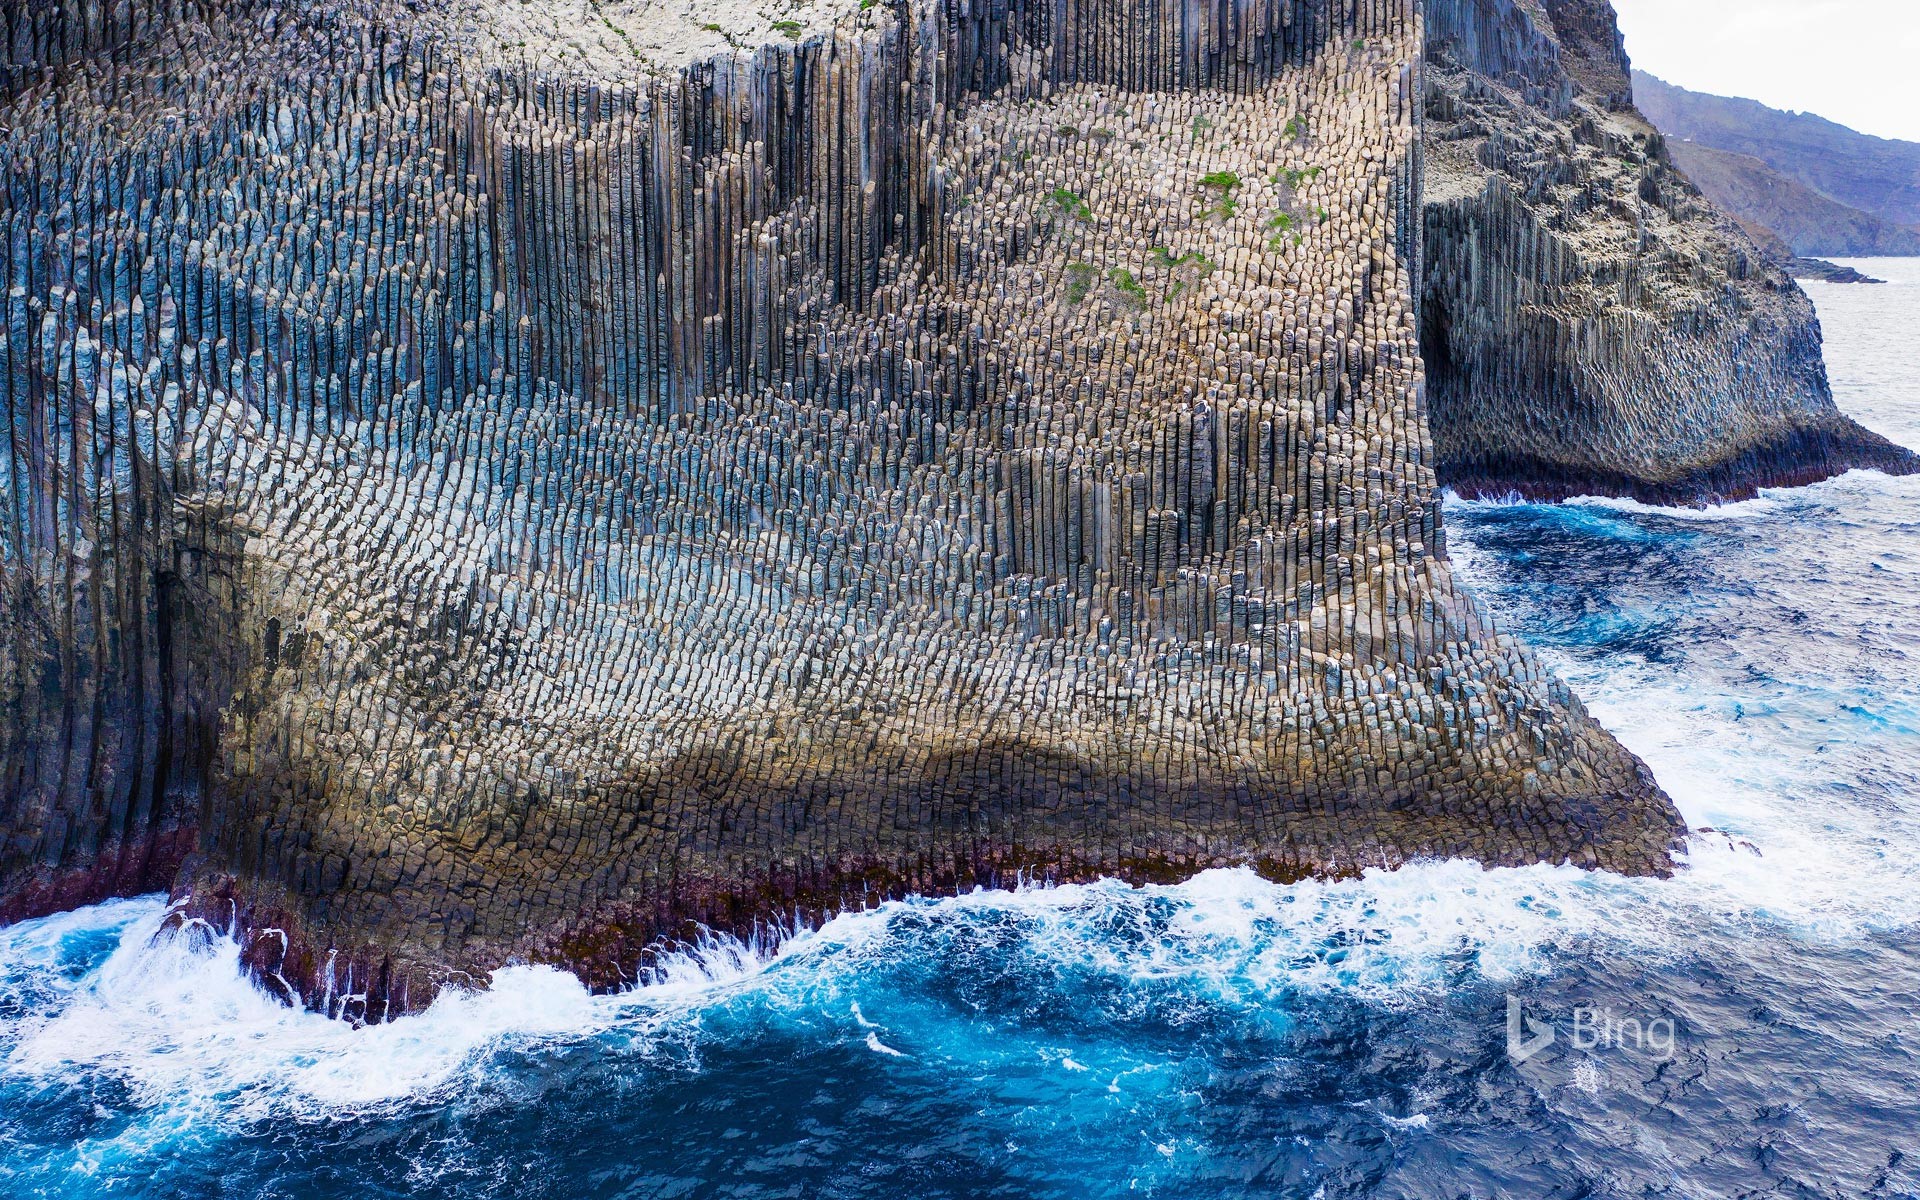 Los Órganos basalt rock formation, La Gomera, Canary Islands, Spain